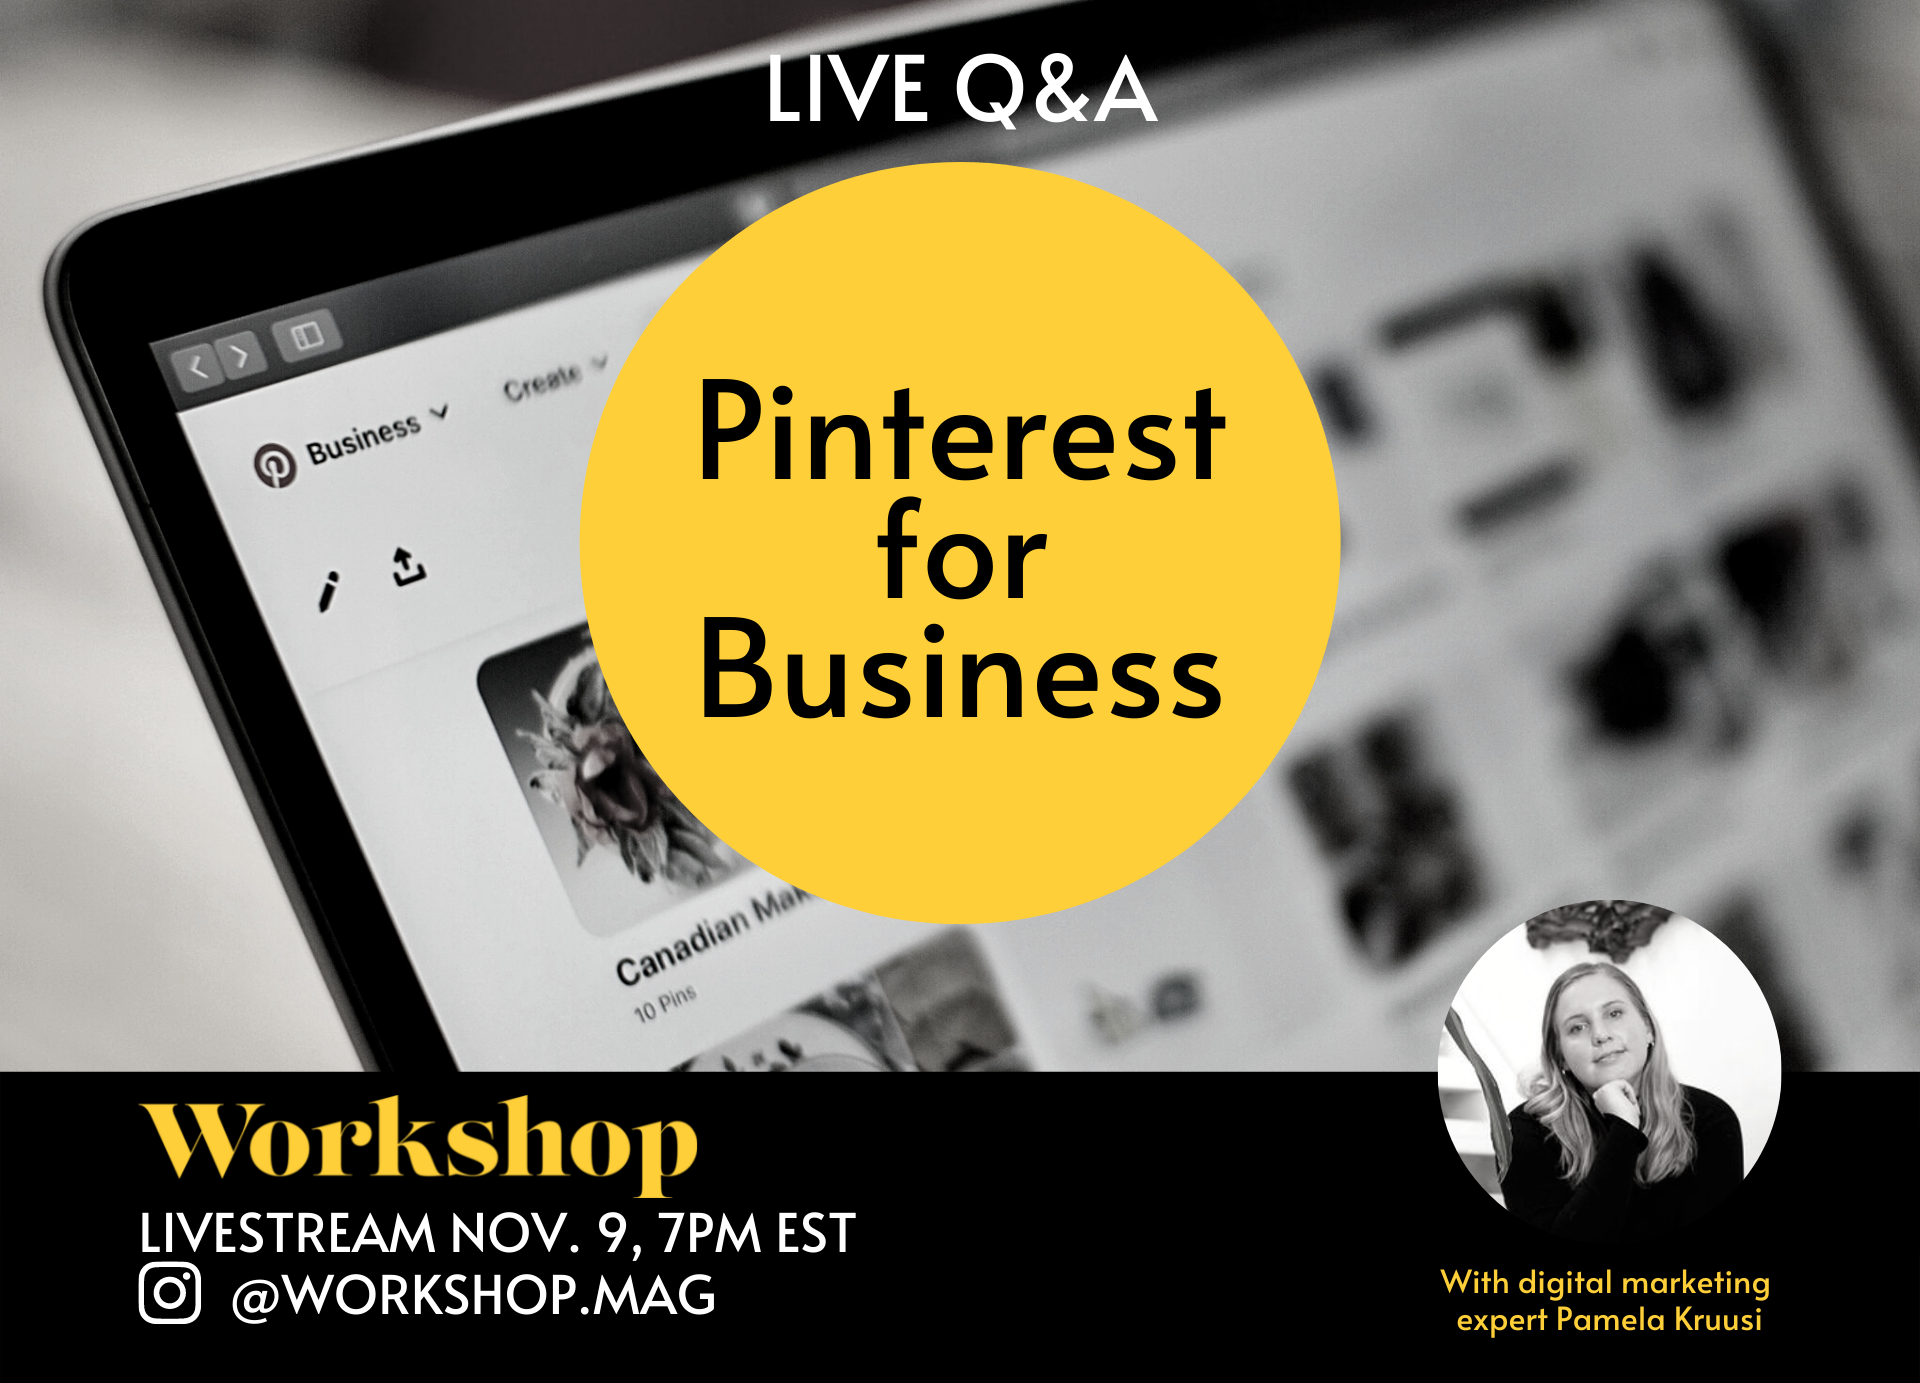 Image promoting an event. Text reads: Live Q&A: Pinterest for business with digital marketing expert Pamela Kruusi. Workshop livestream Nov. 9, 7 pm EST, on Instagram @workshop.mag.